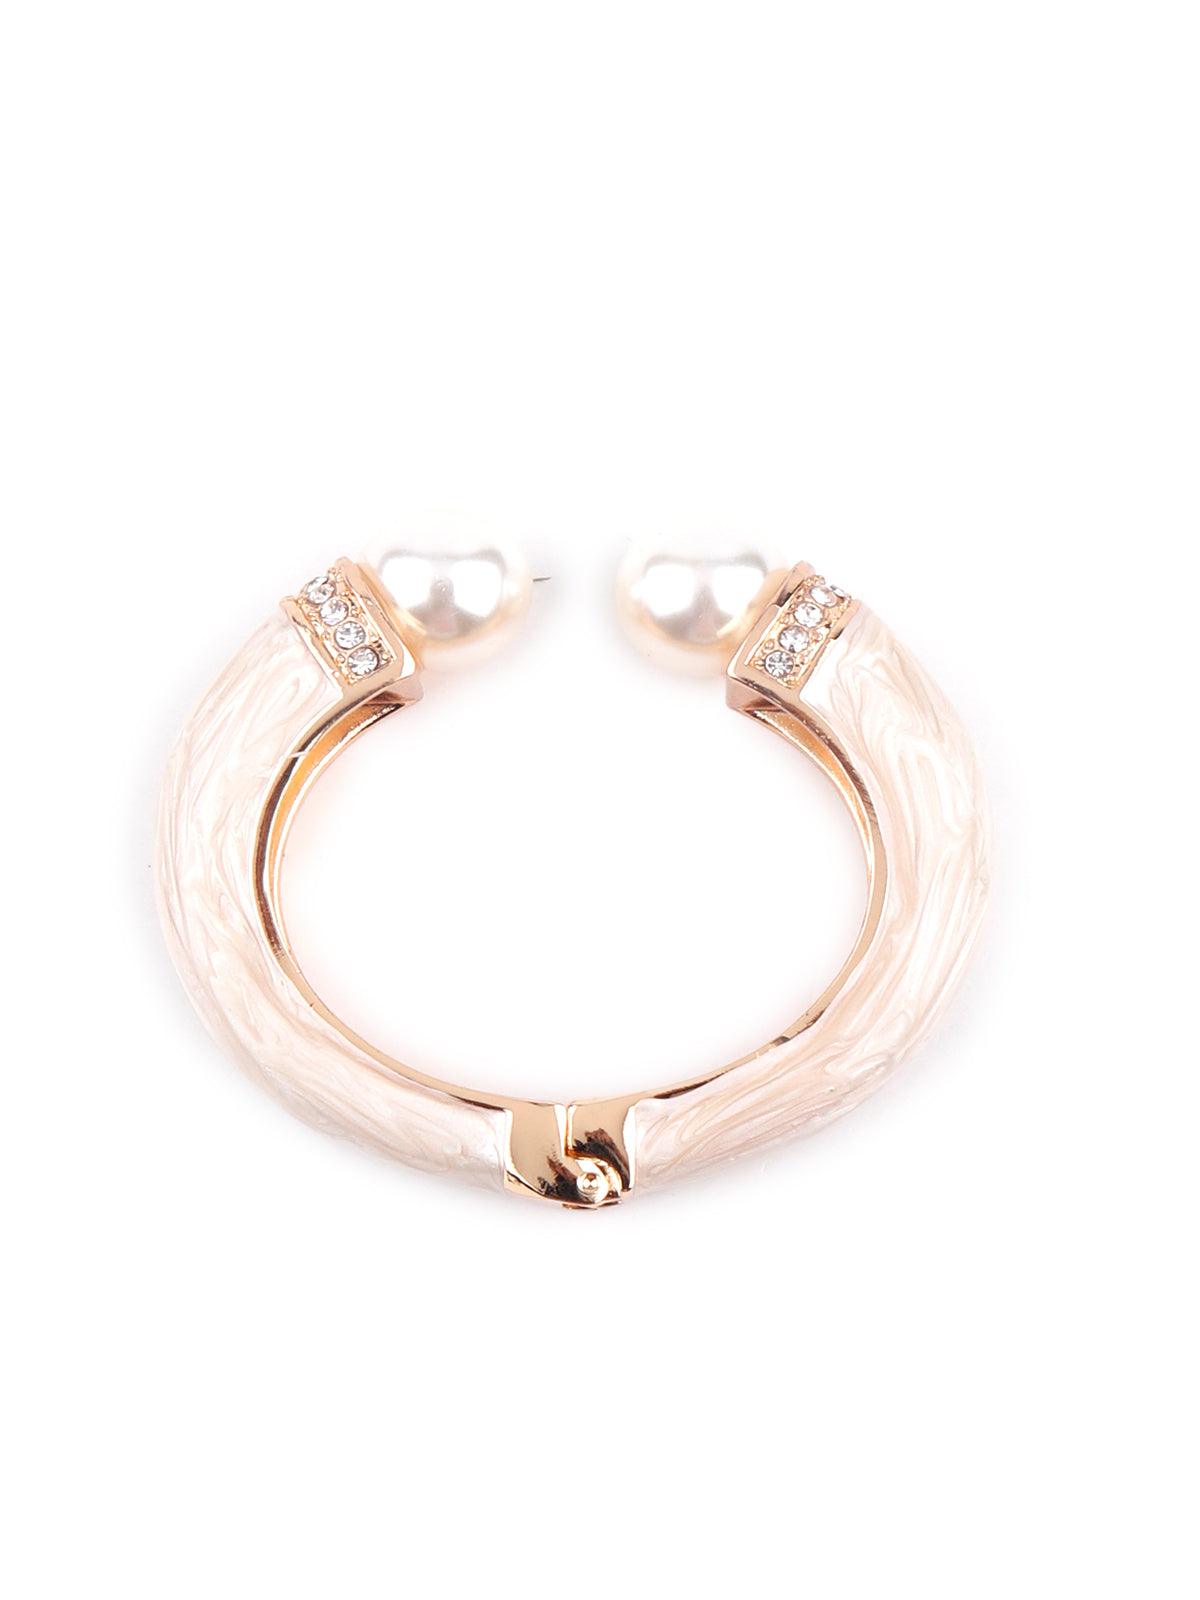 Women's Stunning Gold Kada Bracelet For Women - Odette